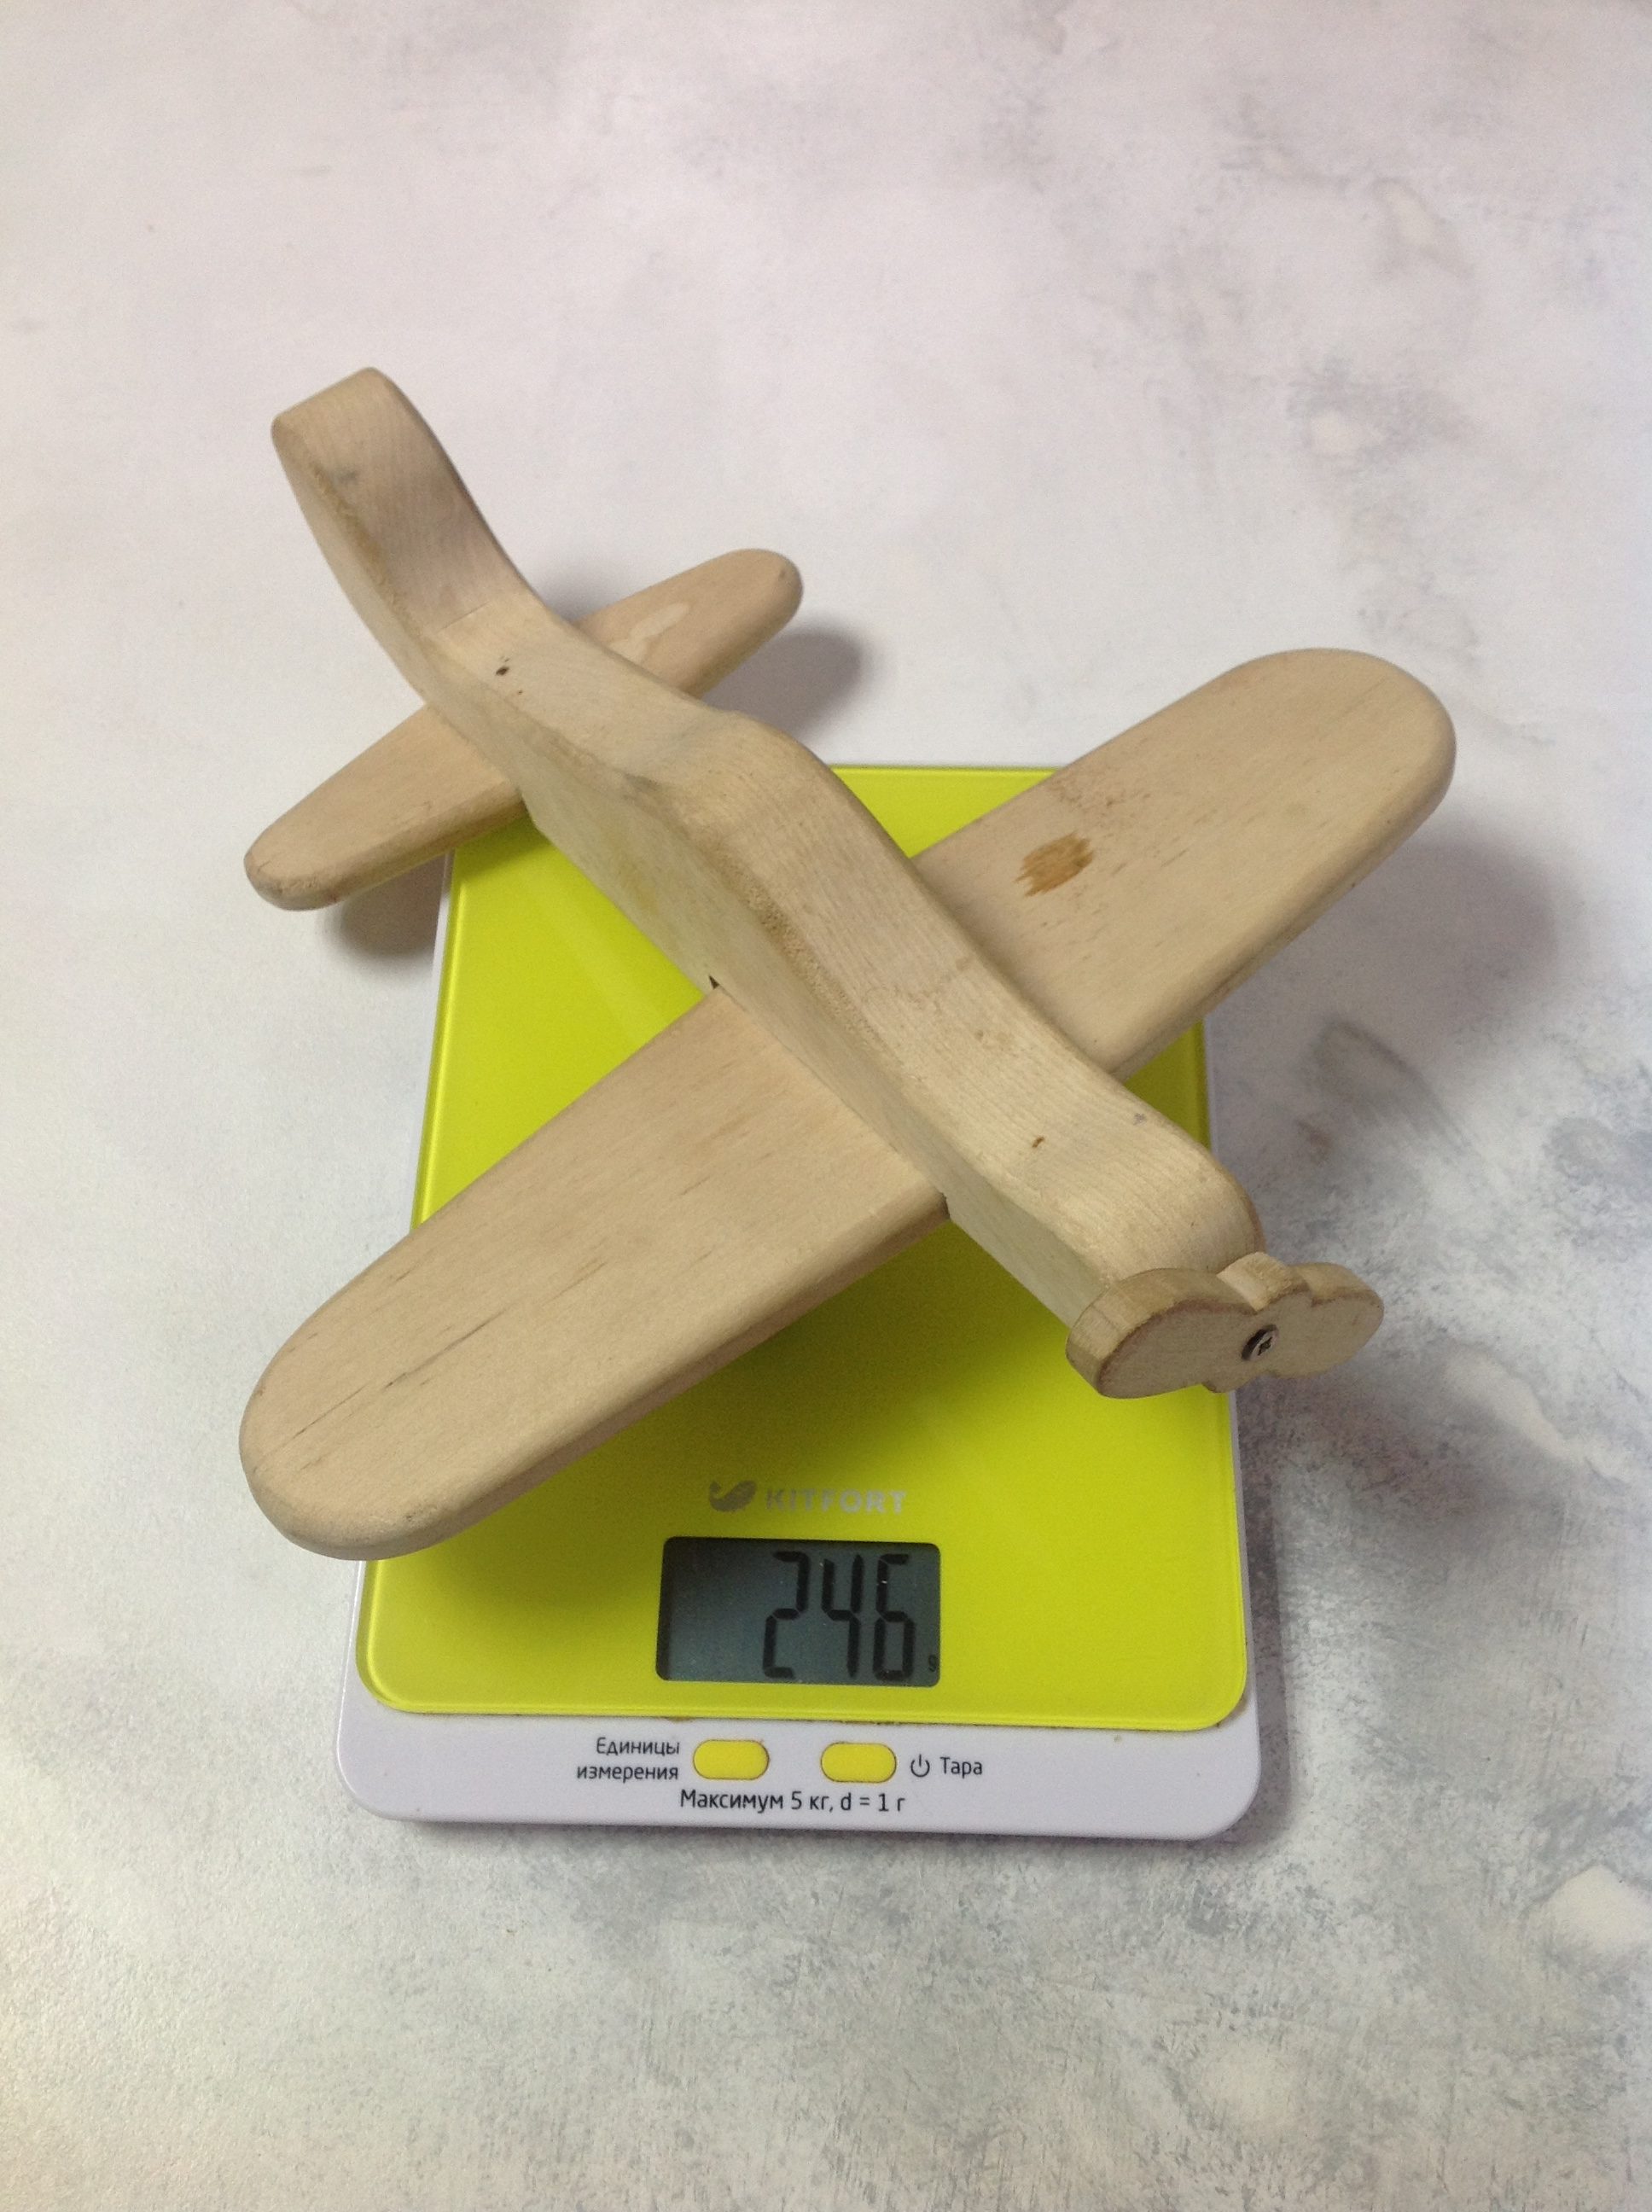 Berapa berat pesawat kayu mainan?